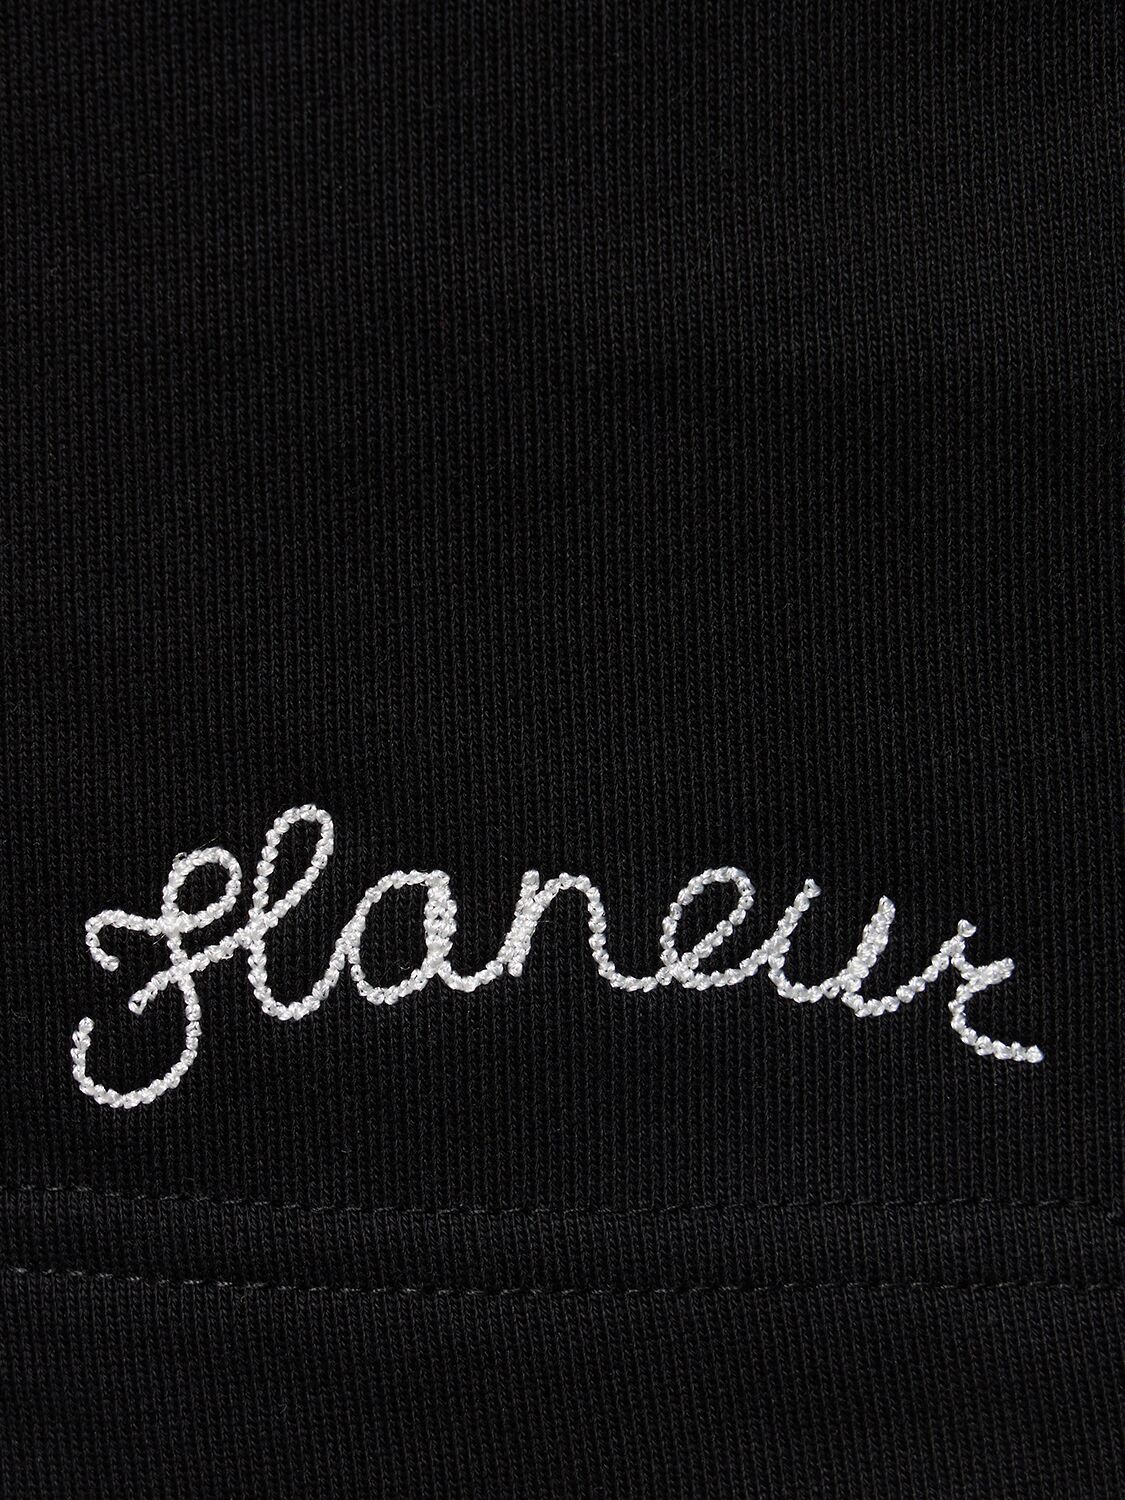 Shop Flâneur Signature Cotton Shorts In Black